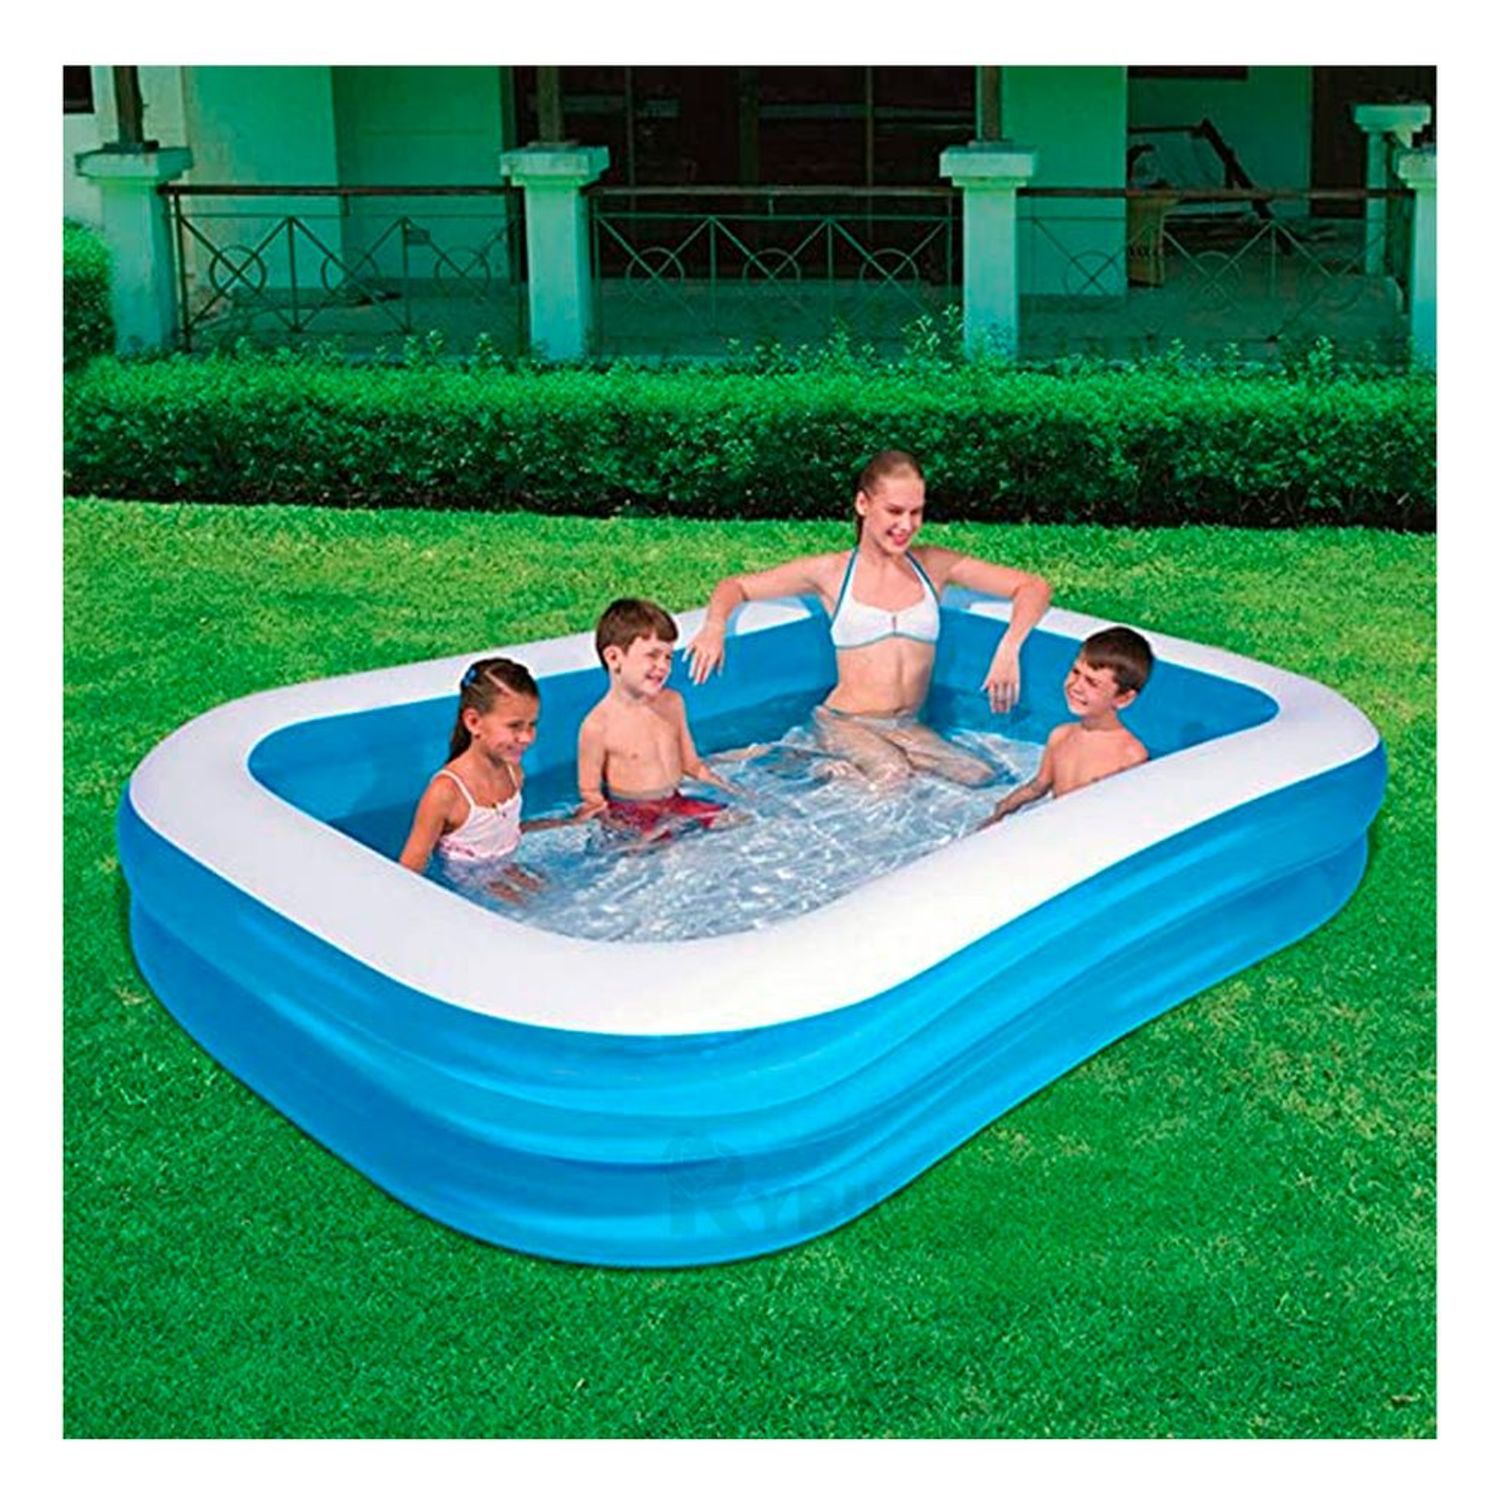 Cuál es el tamaño ideal para una piscina hinchable?